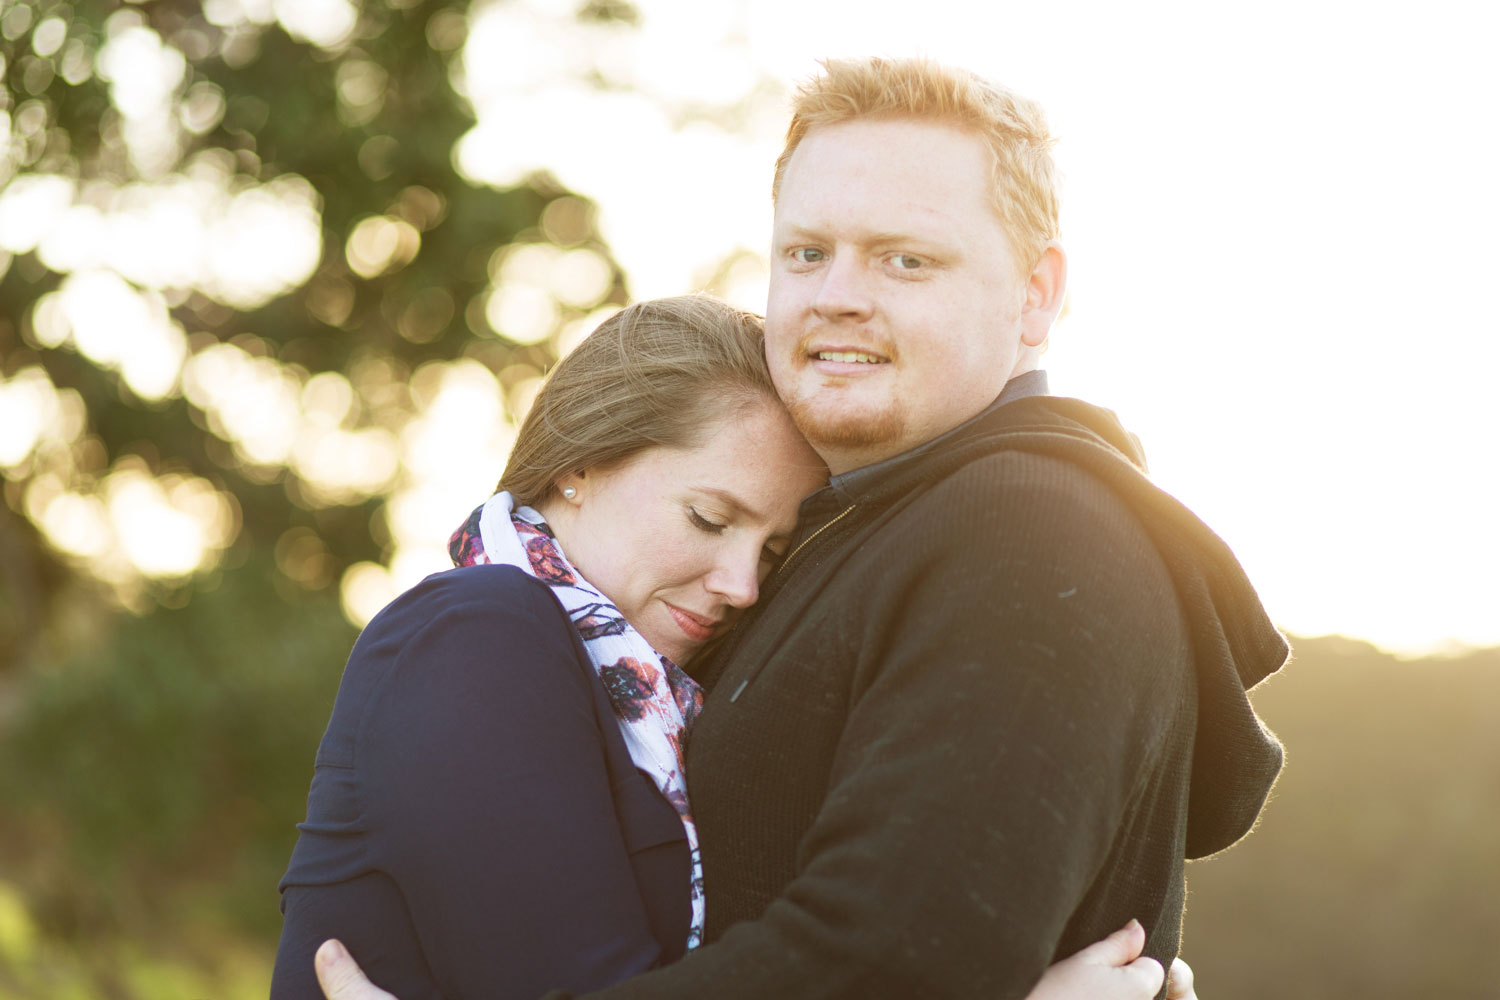 auckland engagement photo couple embrace